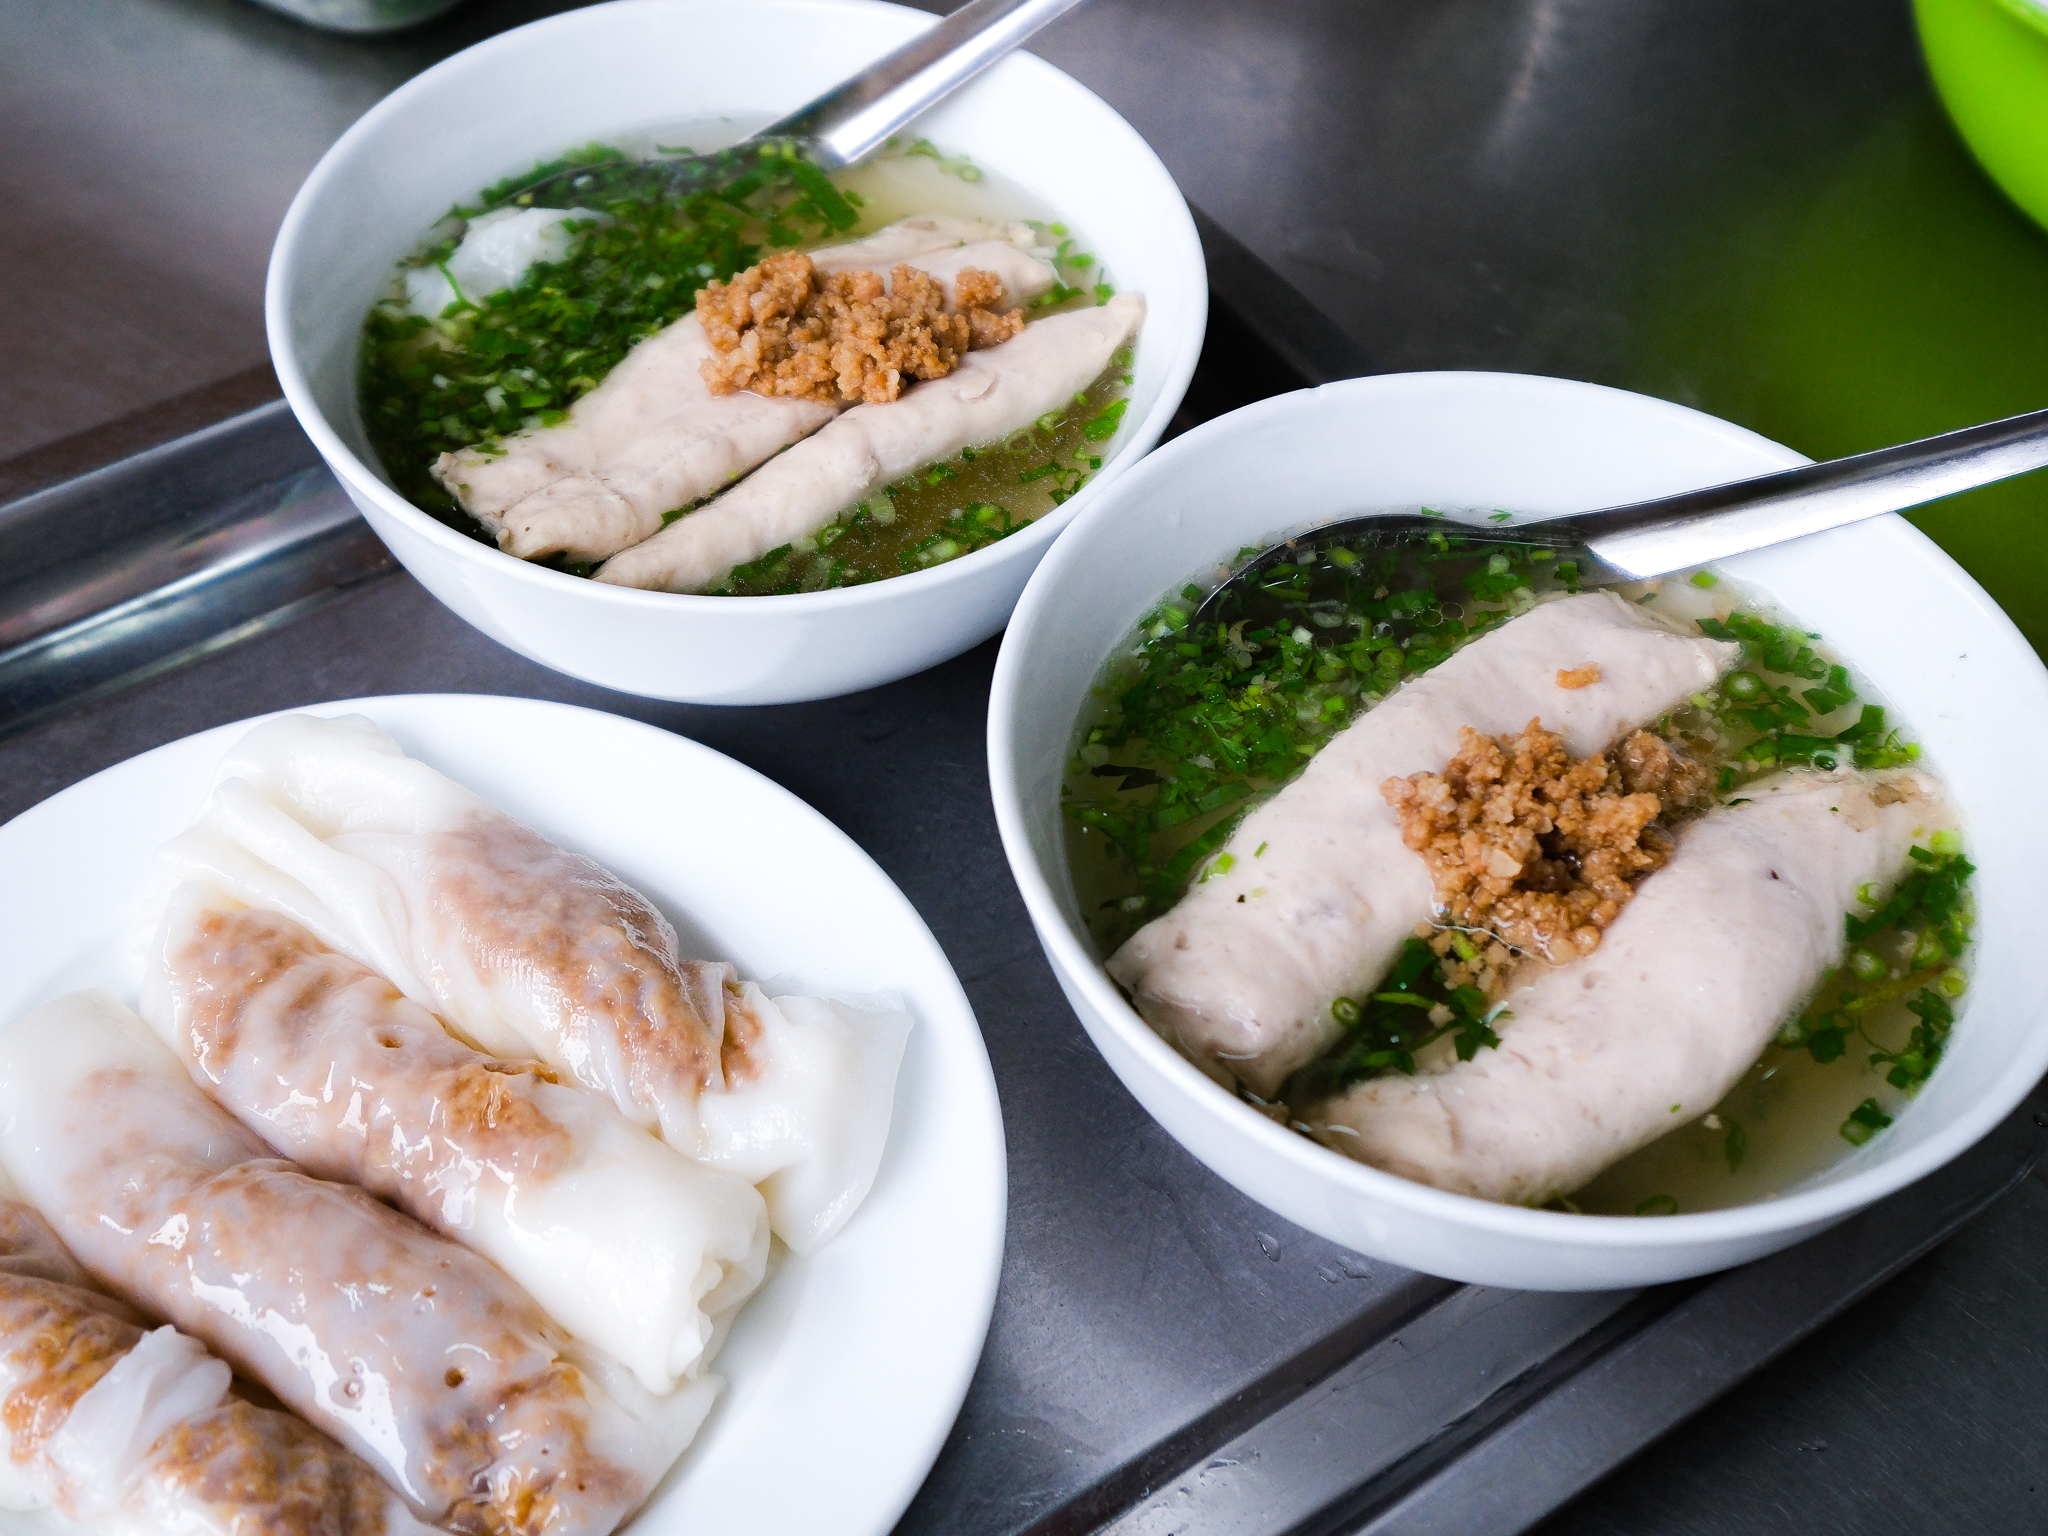 Portions of banh cuon are ready to serve. Photo: Nam Tran / Tuoi Tre